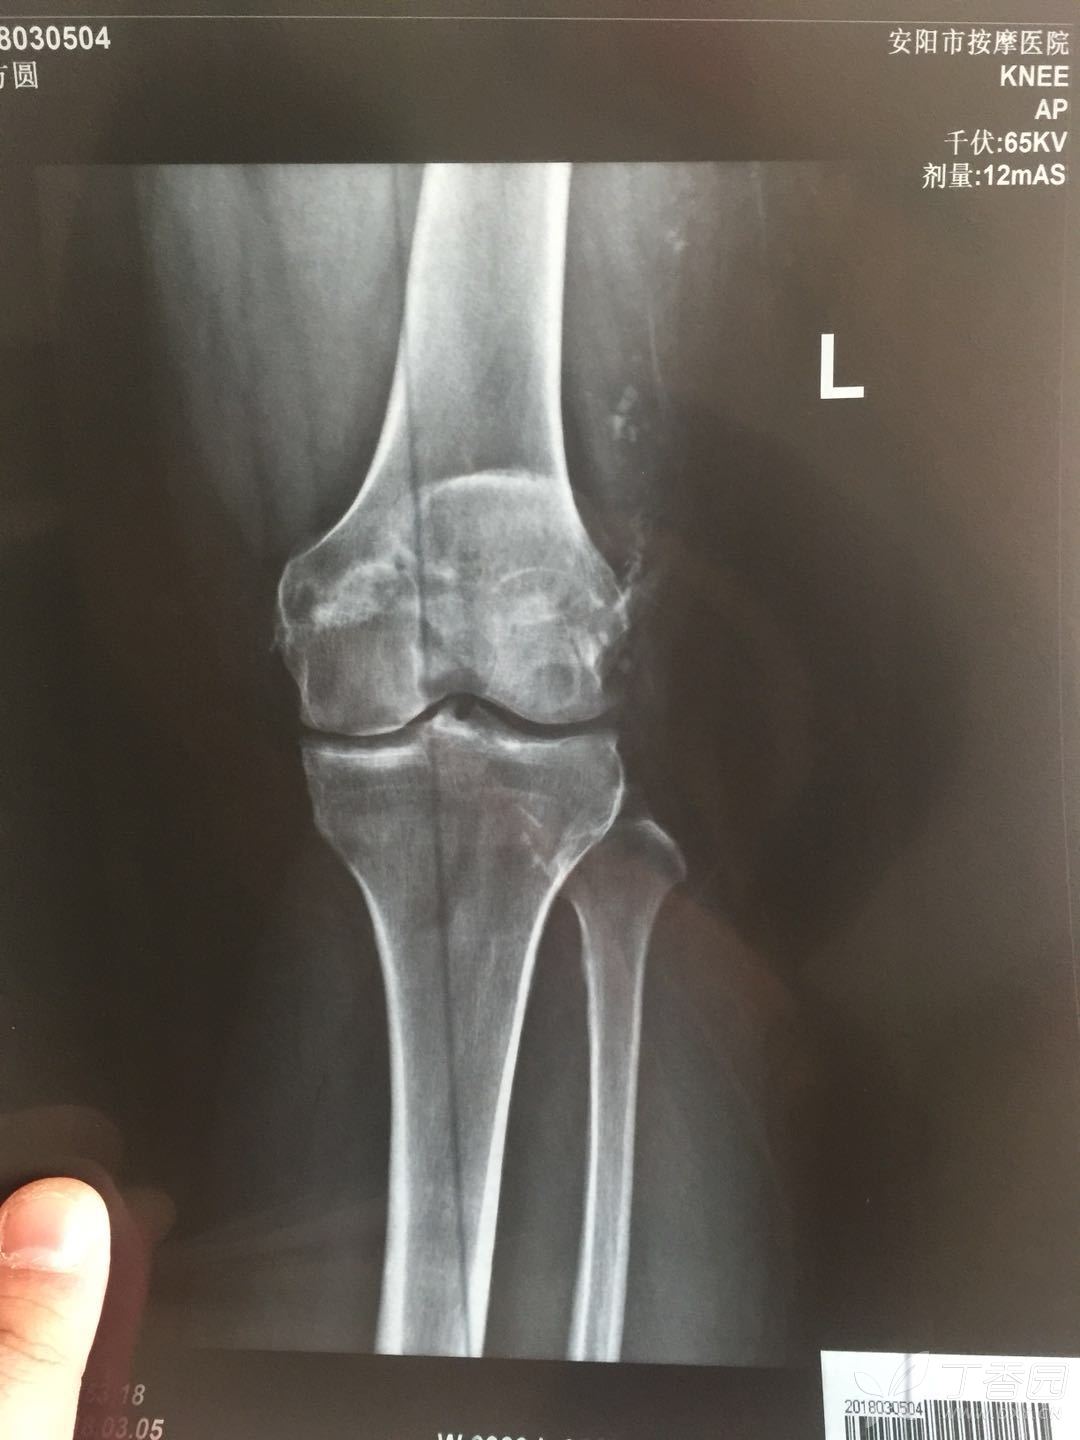 正常的膝关节影像图片图片